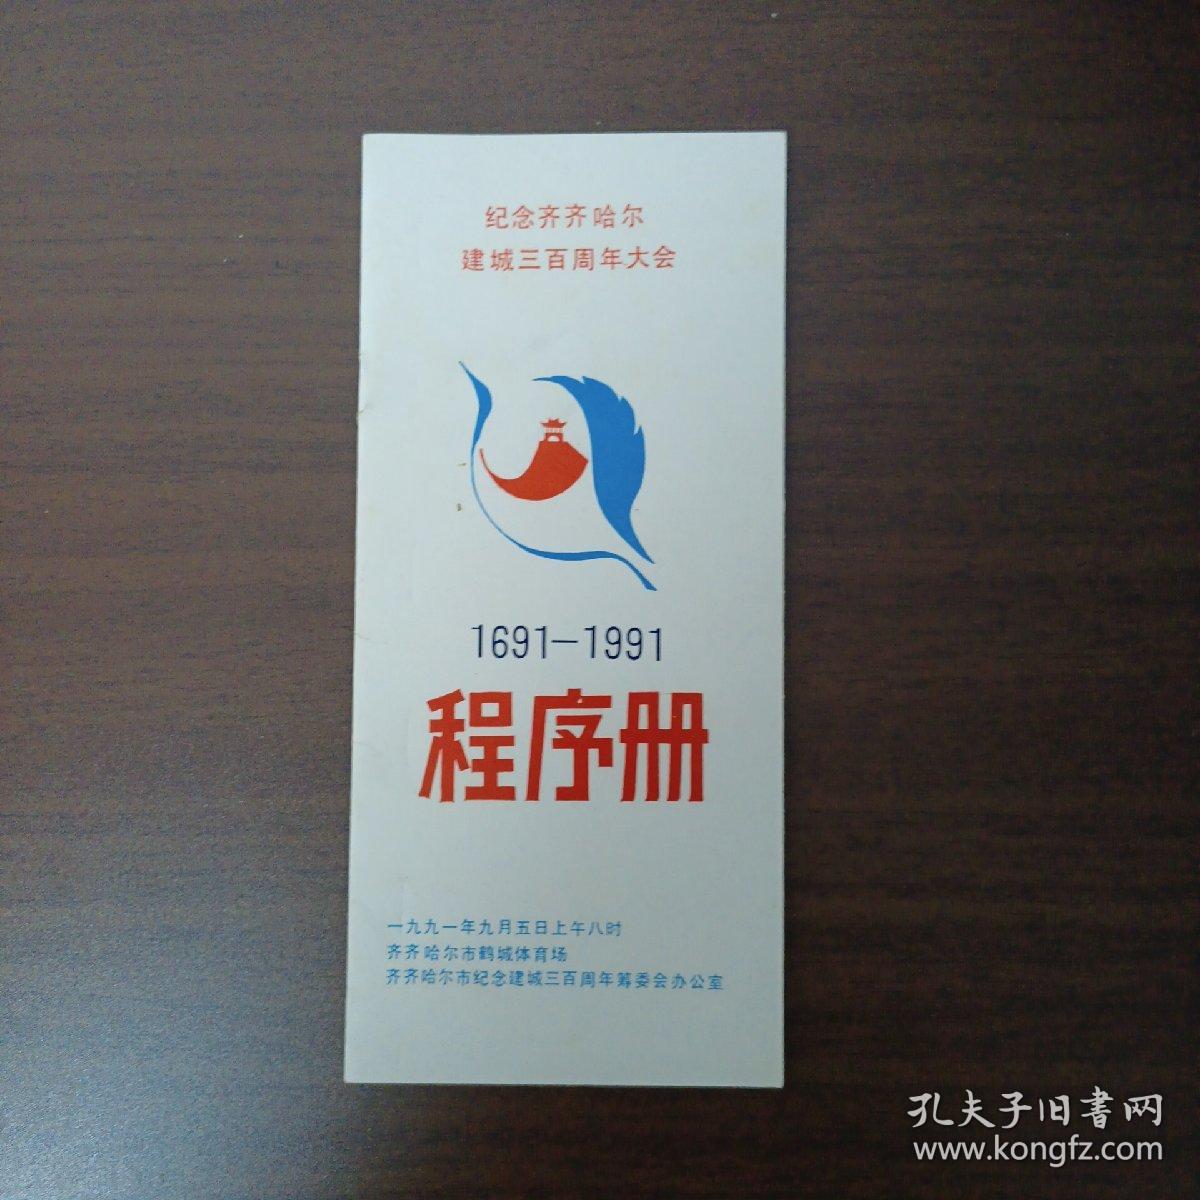 纪念齐齐哈尔建成三百周年大会程序册